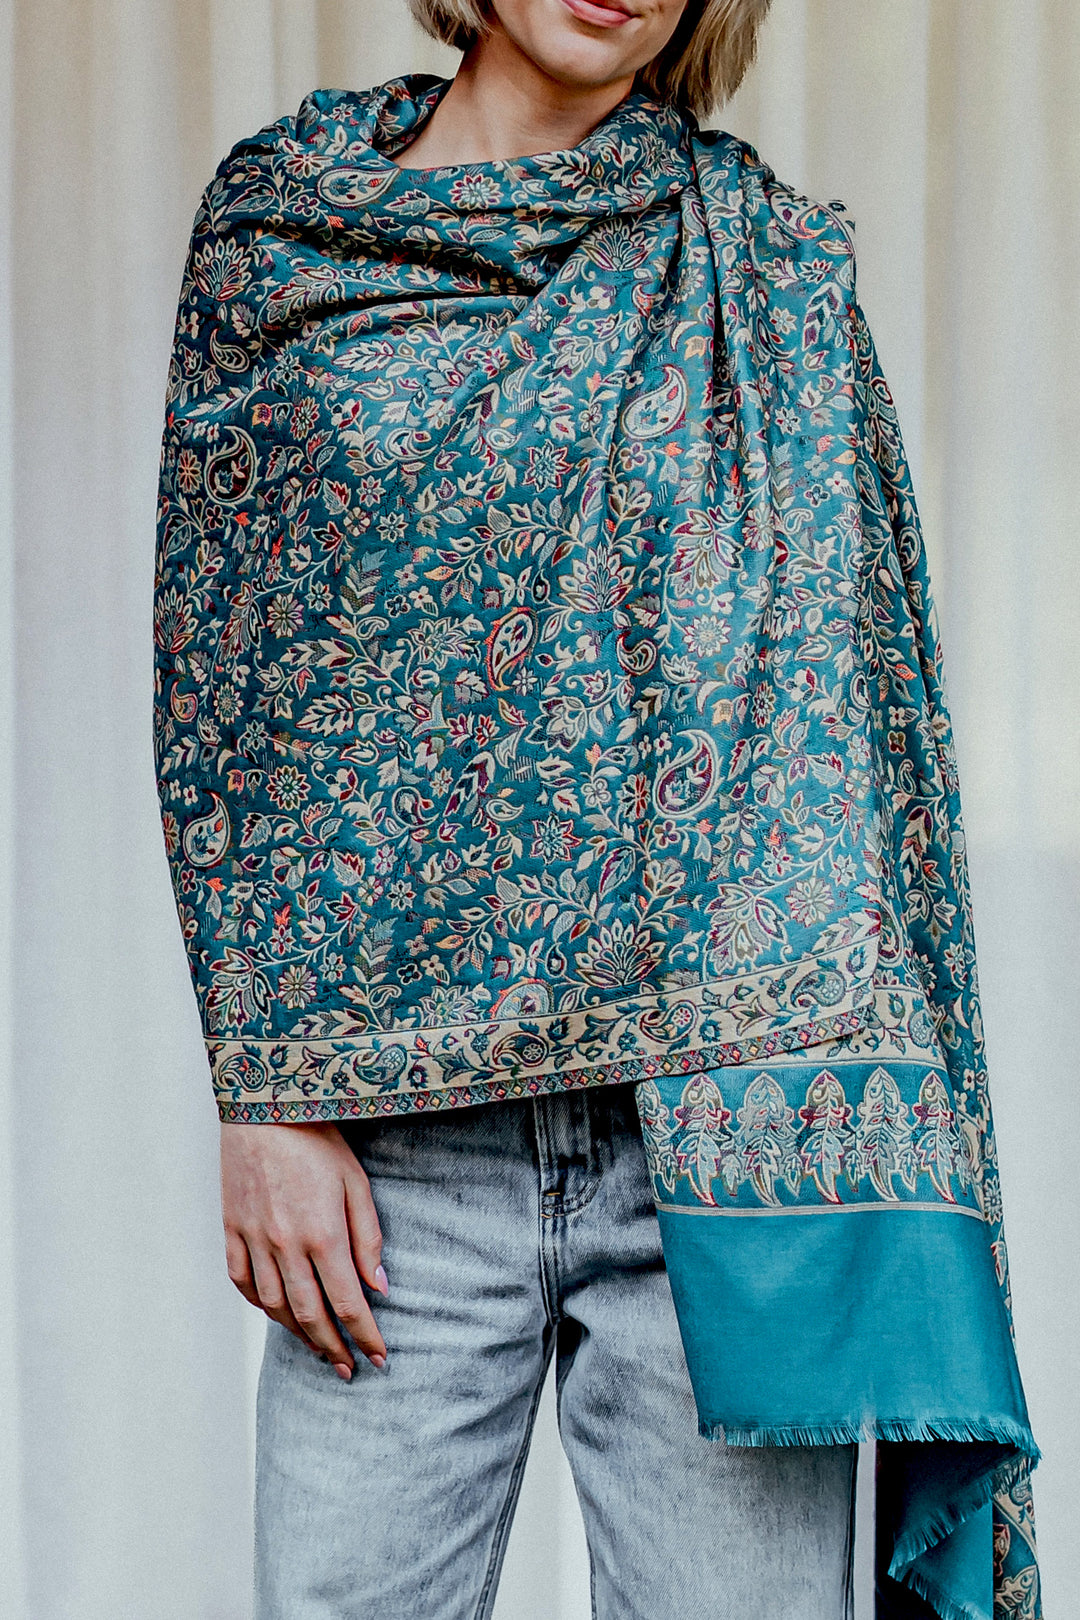 mayura woollen shawl